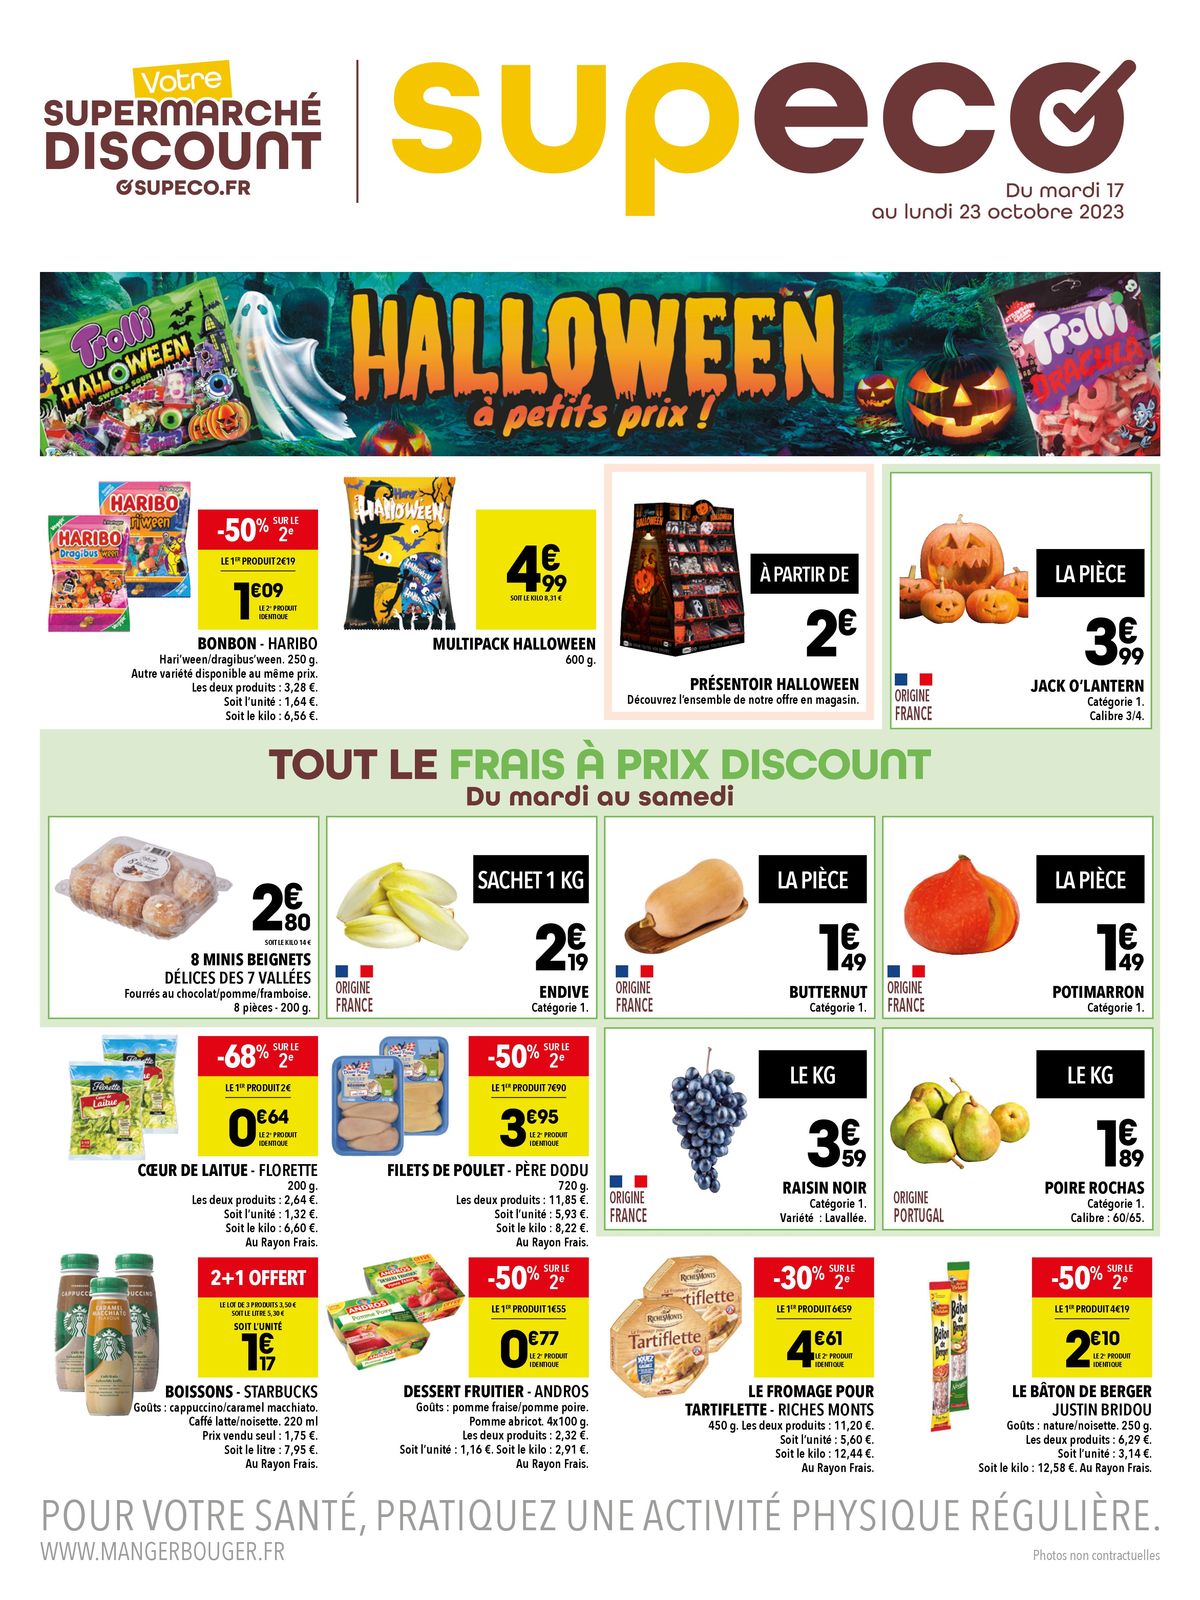 Catalogue Halloween à petit prix !, page 00001